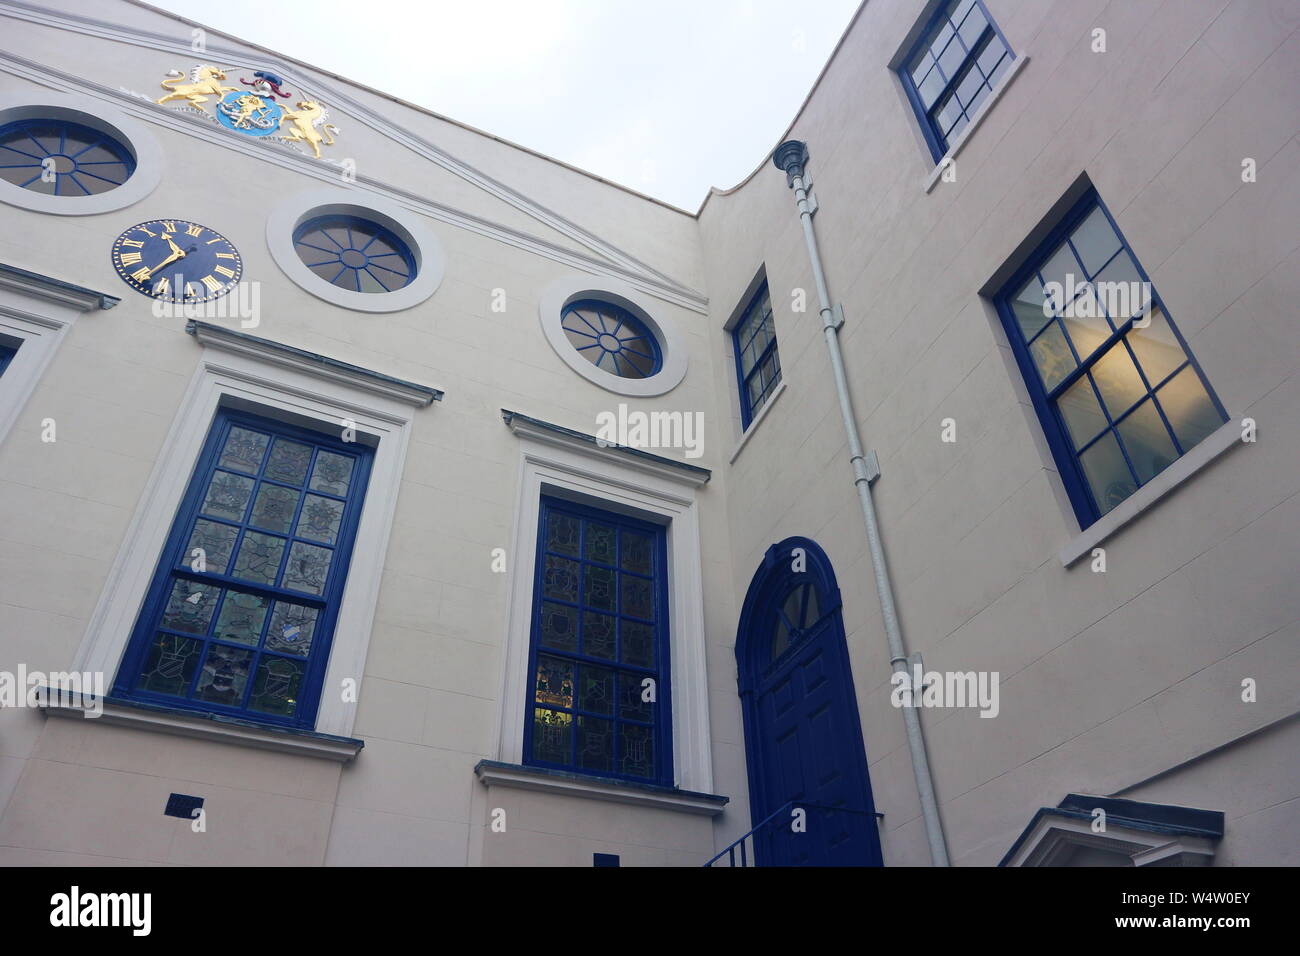 Une photo d'une maison avec des fenêtres et portes bleu et divers ornements d'or sur les murs. La photo a été prise à Londres, au Royaume-Uni par une matinée pluvieuse. Banque D'Images